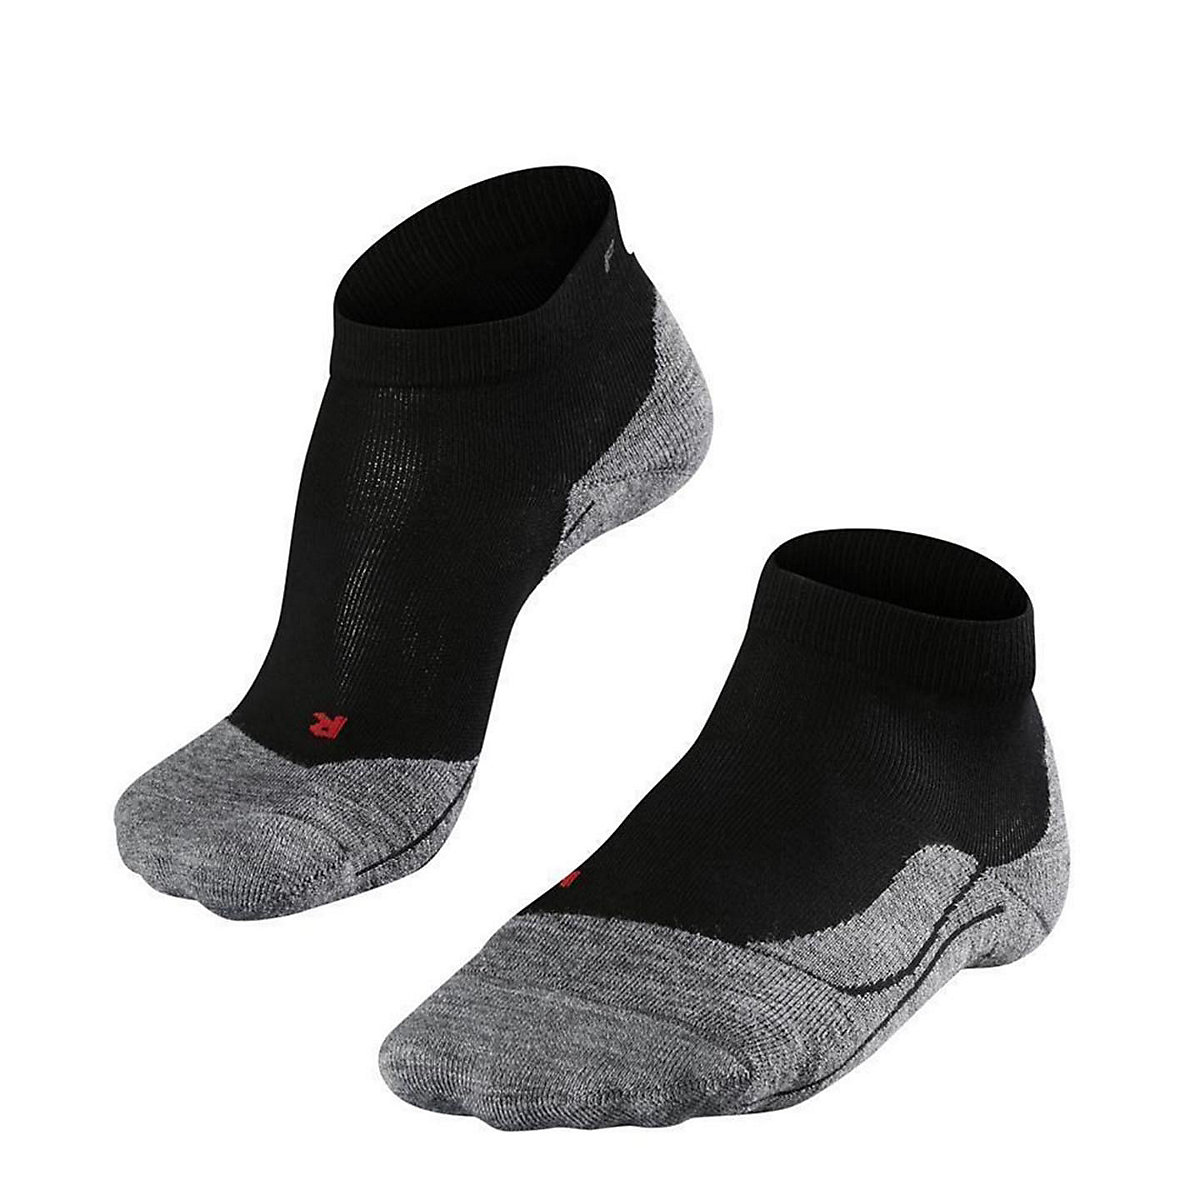 FALKE Damen Quarter Socken RU4 Short Laufsocken Sport Polsterung Sportsocken schwarz